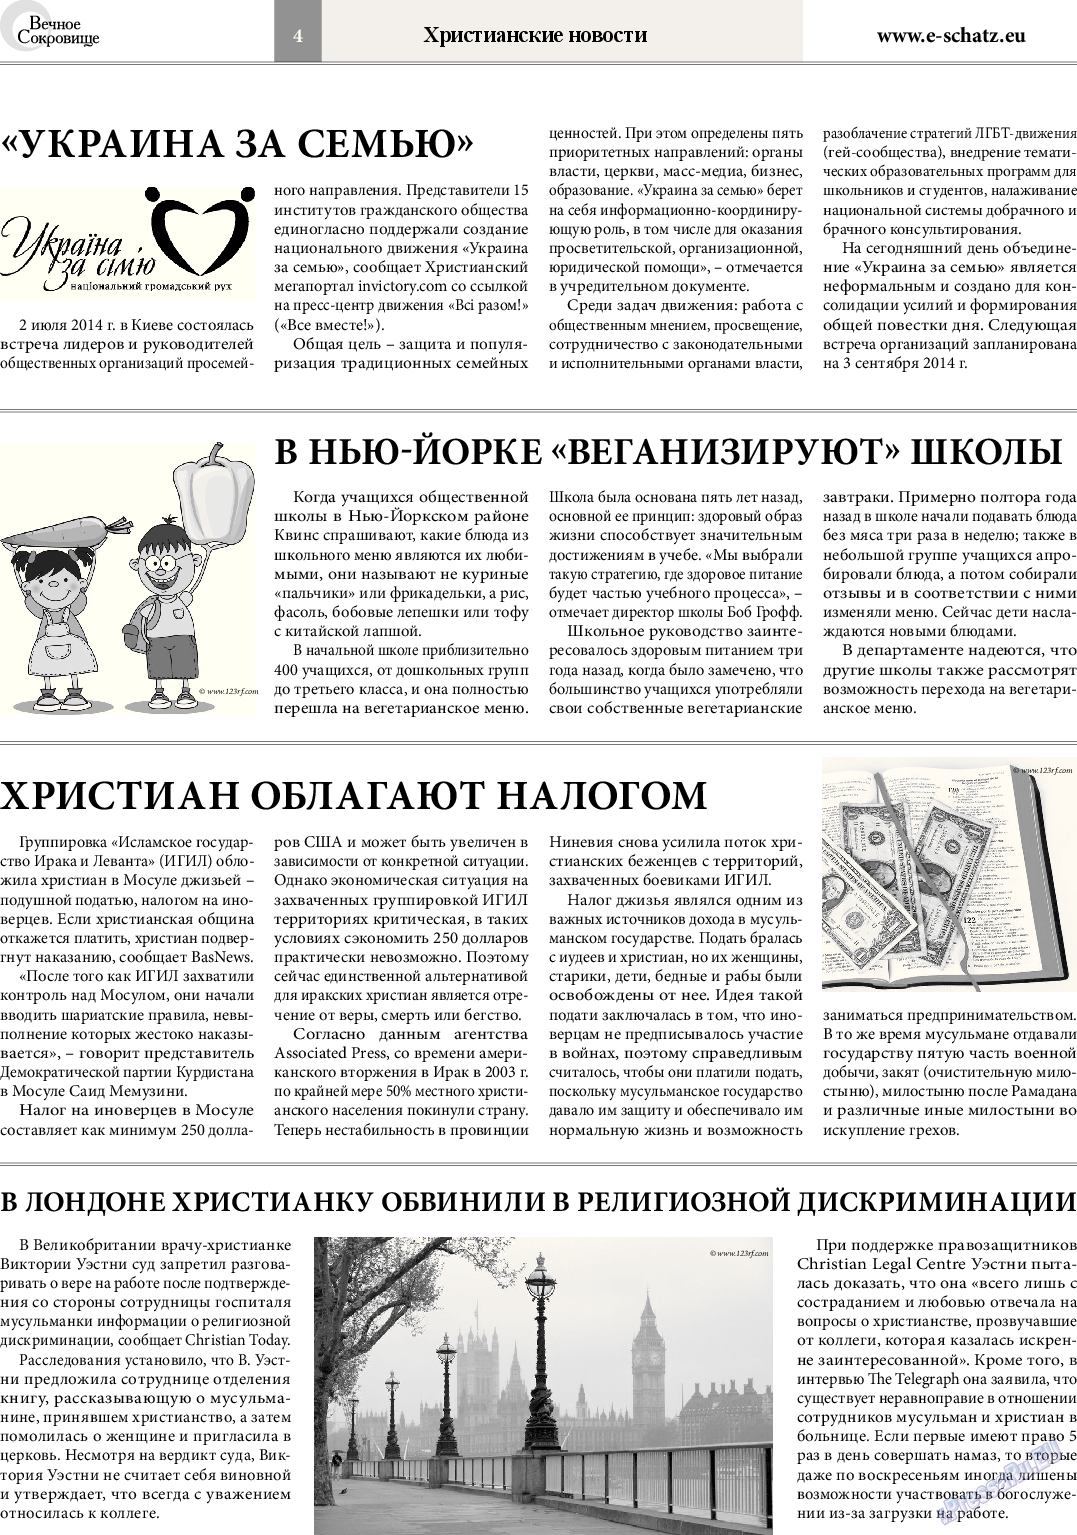 Вечное сокровище, газета. 2014 №4 стр.4